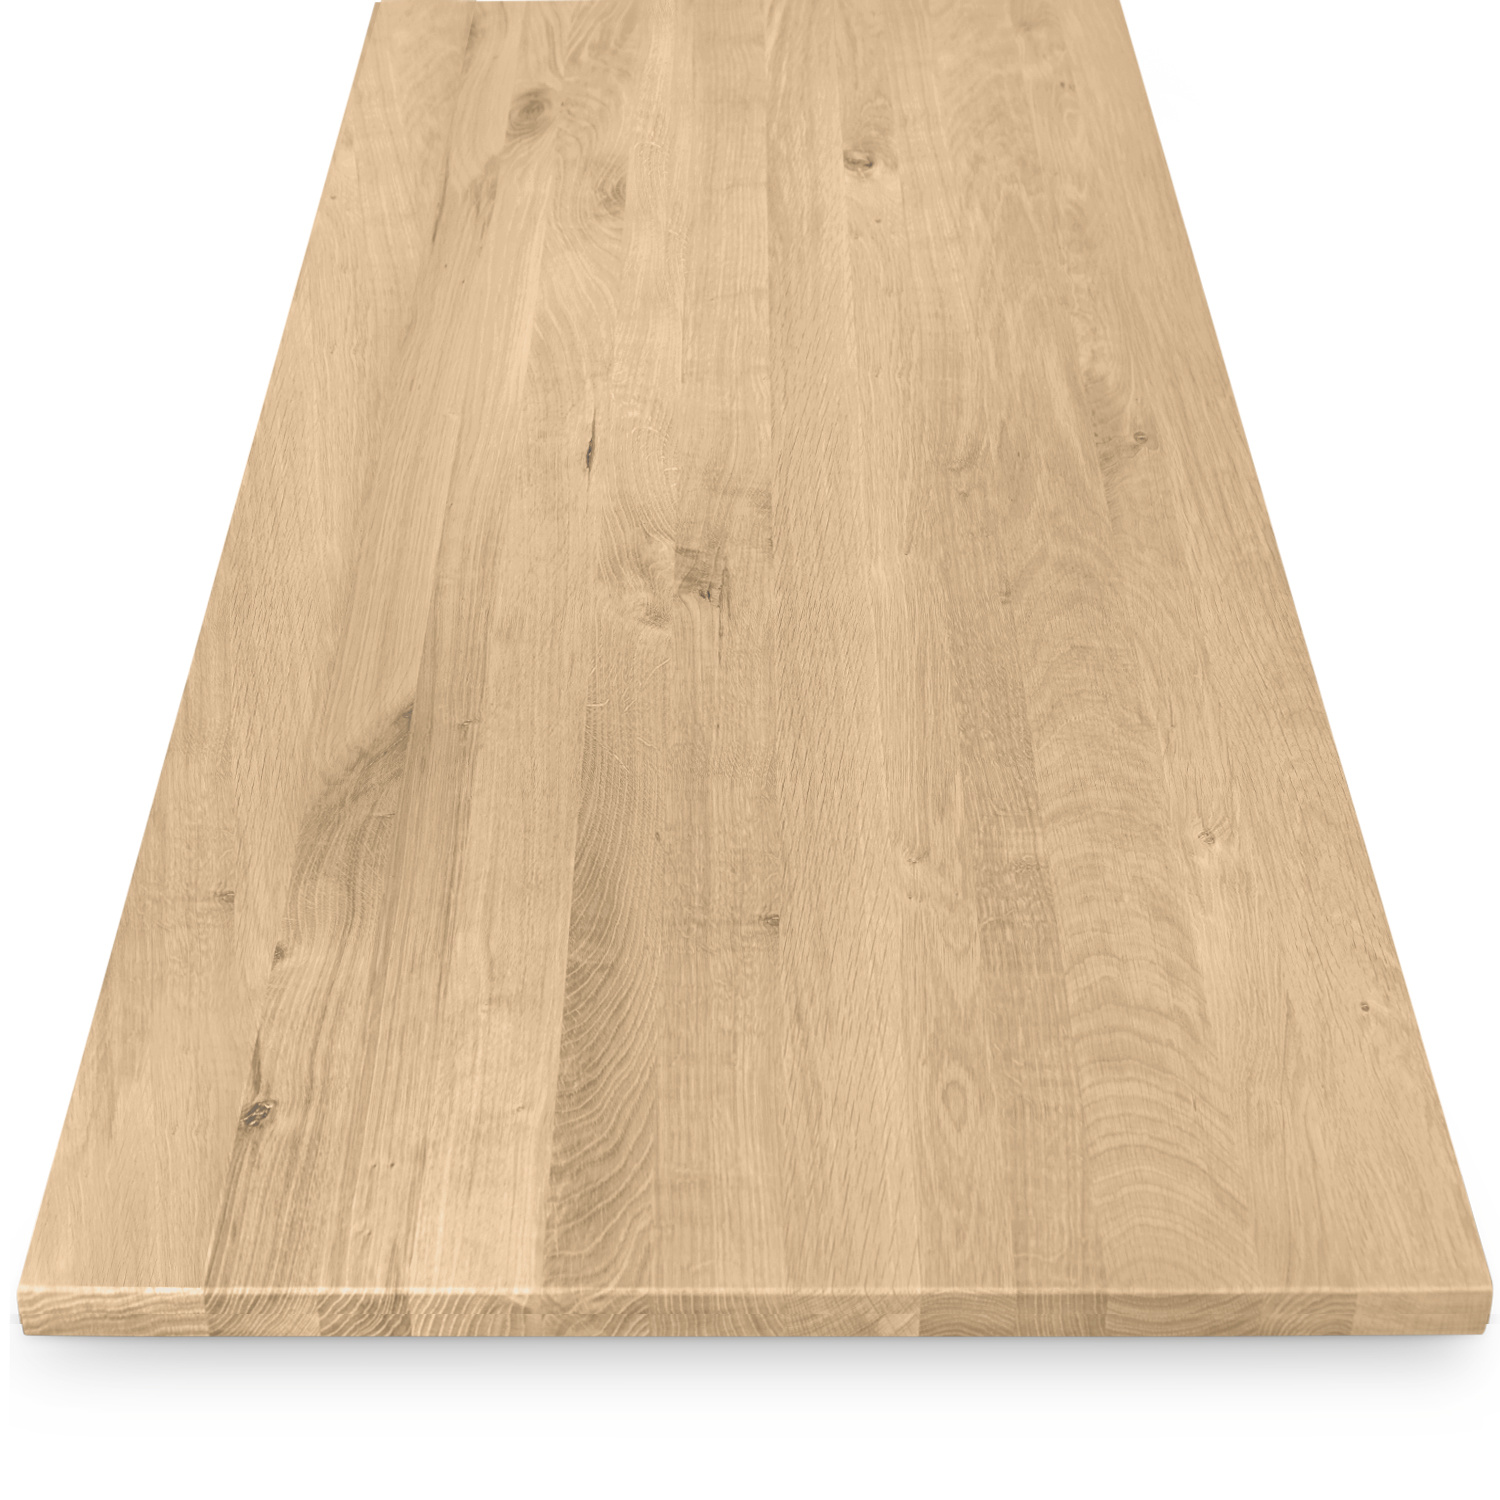  Tischplatte Eiche nach Maß - 2 cm dick - Eichenholz rustikal - Eiche Tischplatte massiv - verleimt & künstlich getrocknet (HF 8-12%) - 50-120x50-350 cm